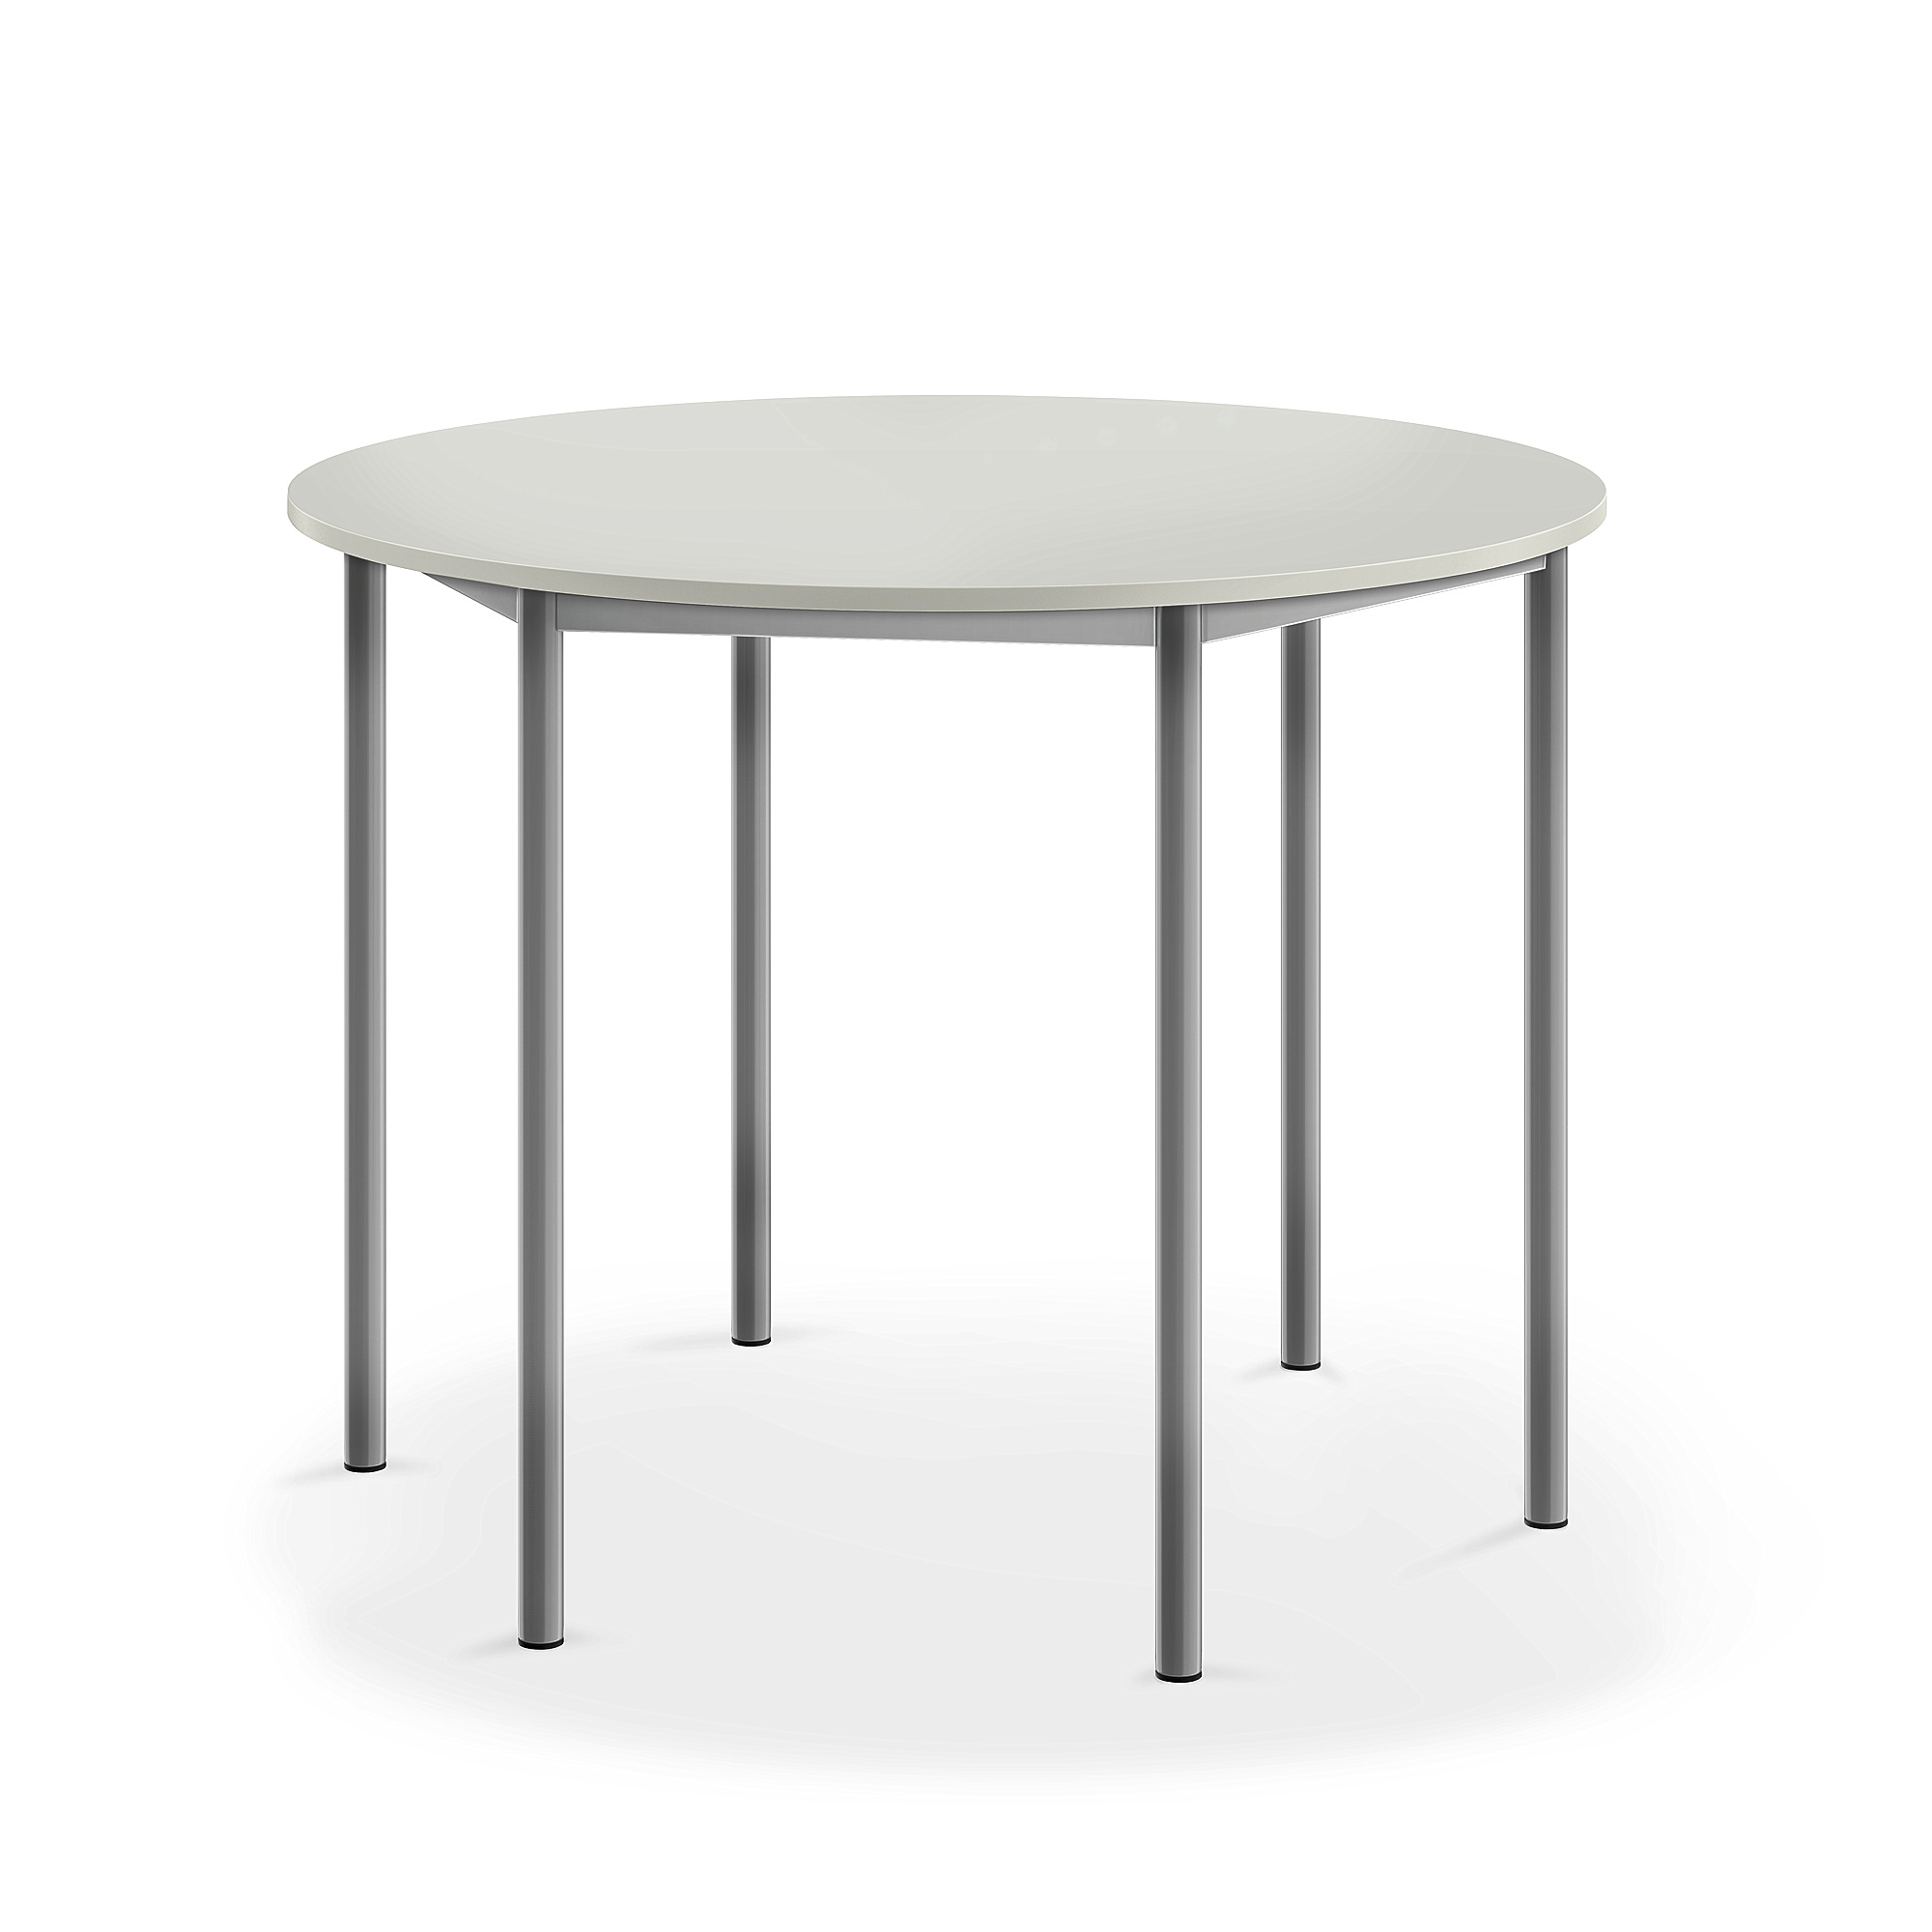 Stůl SONITUS, Ø1200x900 mm, stříbrné nohy, HPL deska tlumící hluk, šedá